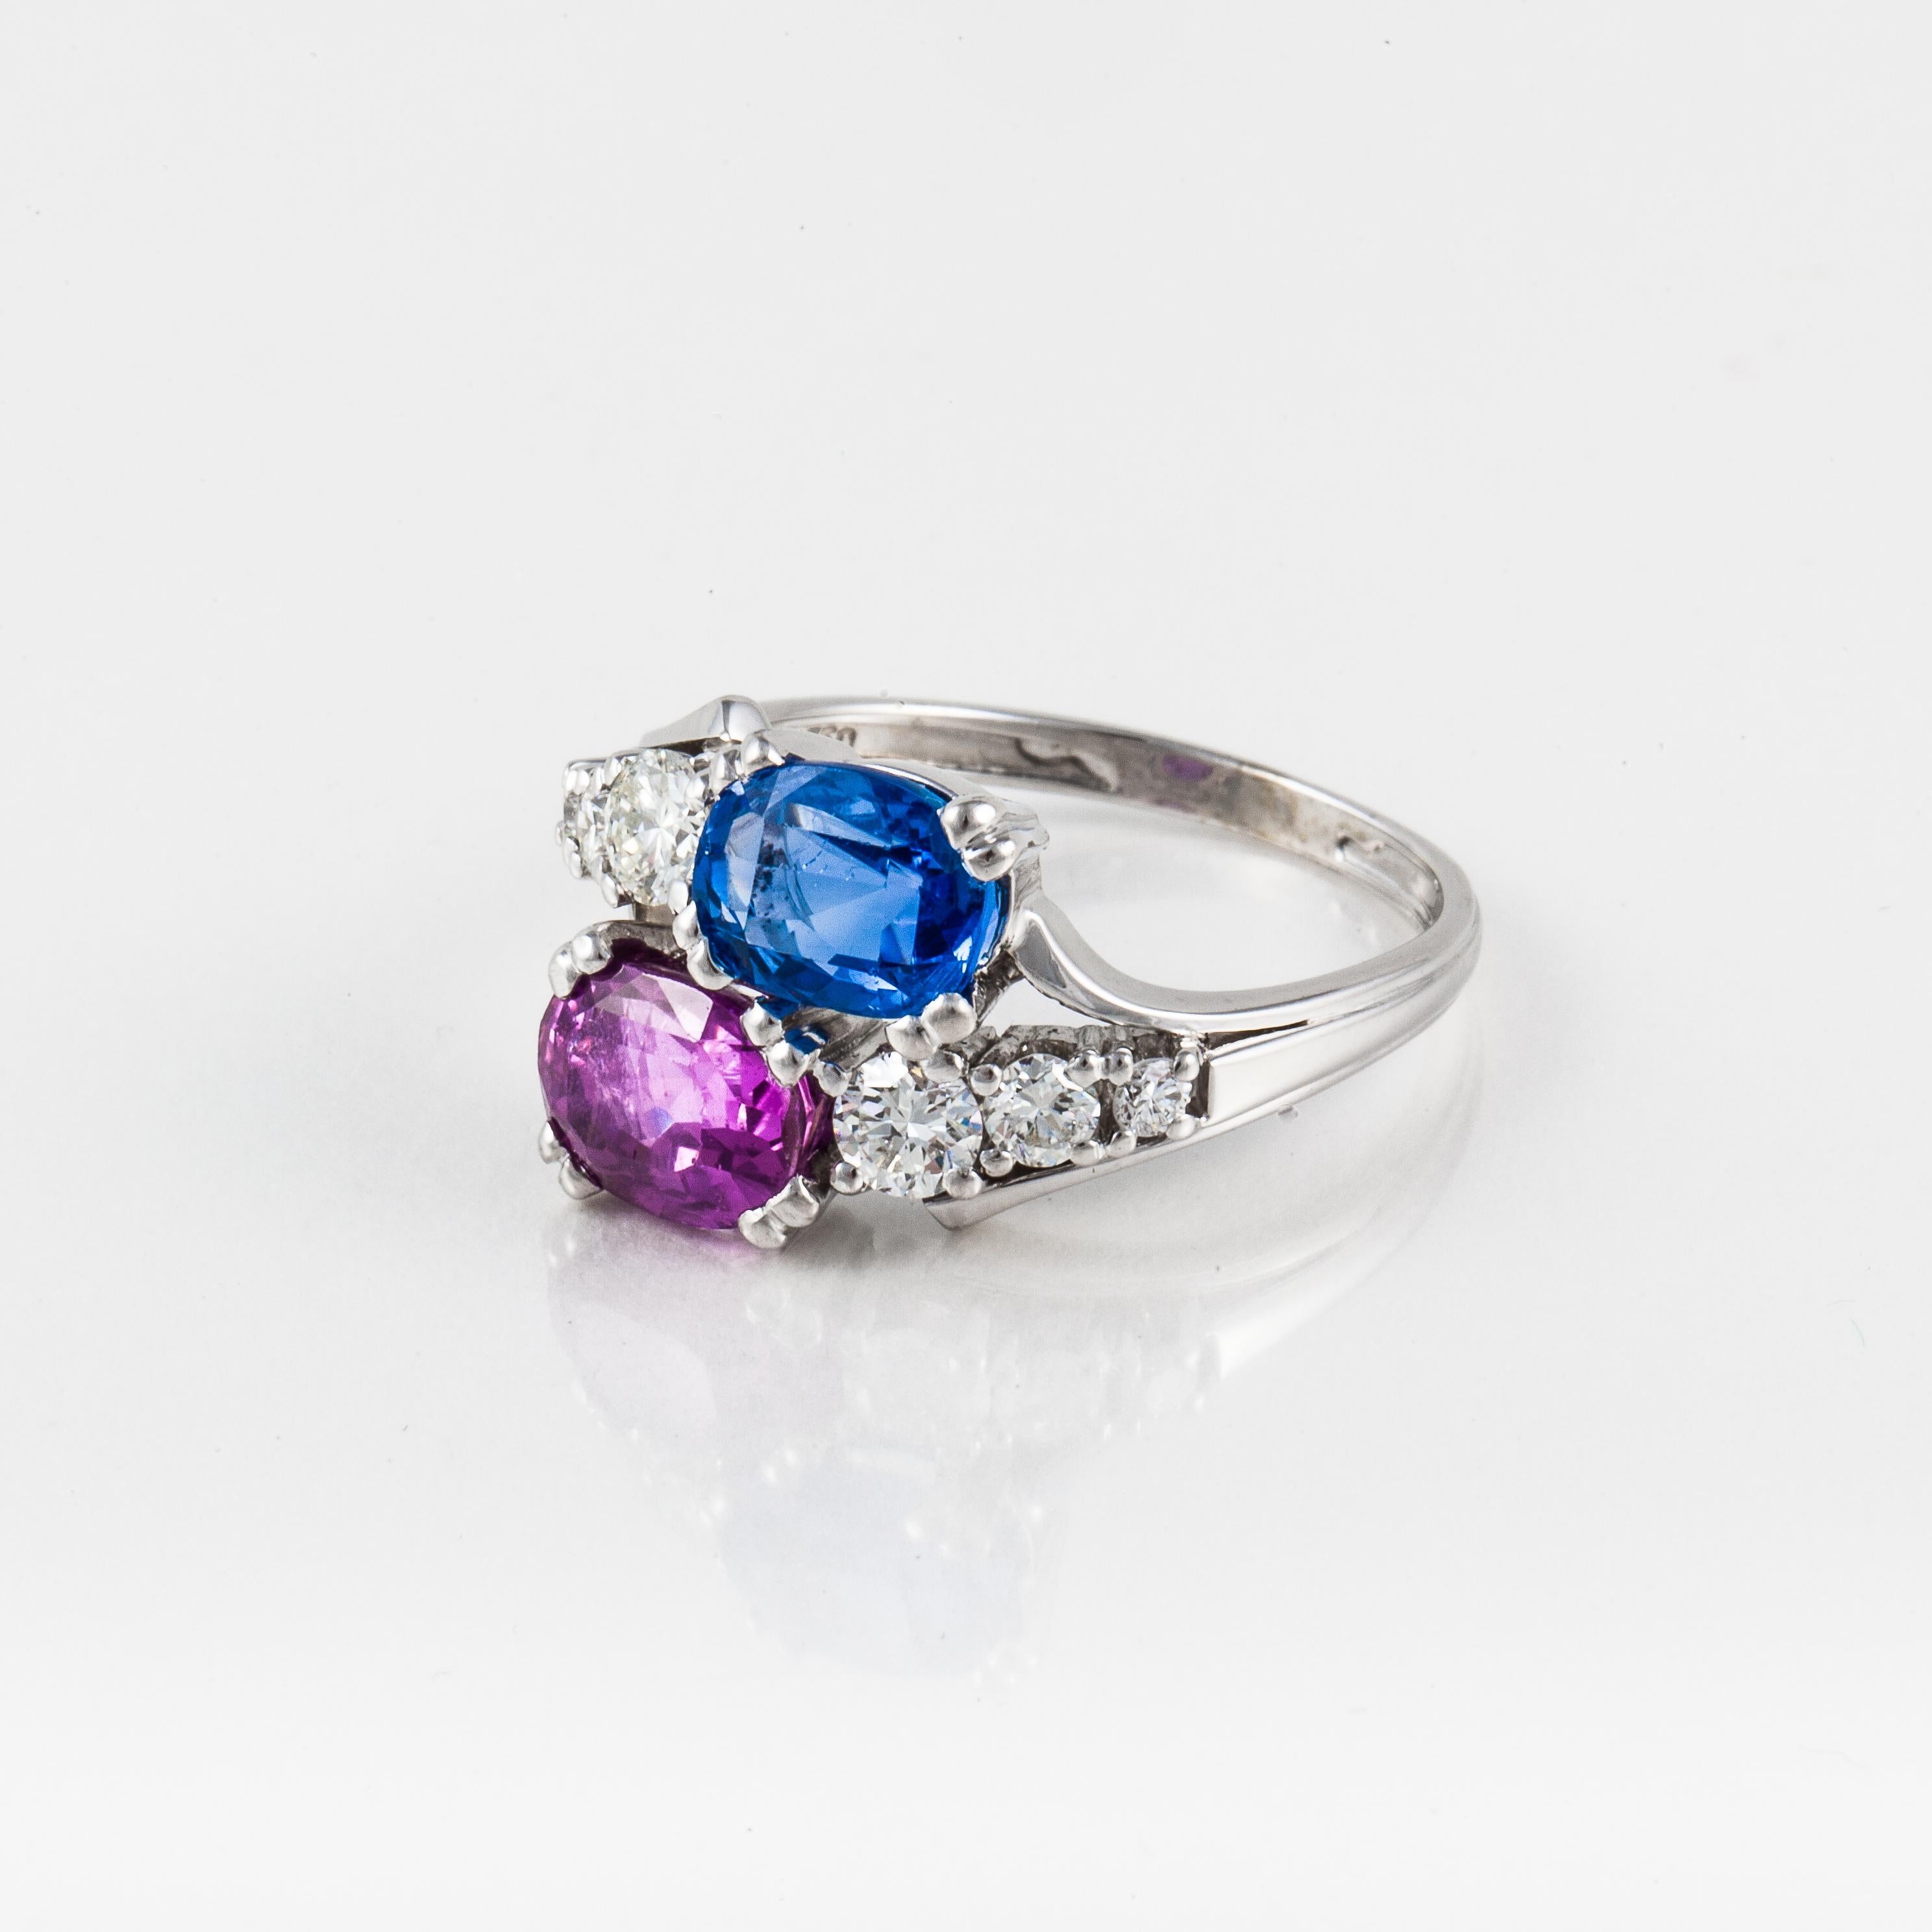 Bypass-Ring aus 18 Karat Weißgold mit einem blauen Saphir im Ovalschliff und einem rosafarbenen Saphir im Ovalschliff, akzentuiert mit runden Diamanten. Die sechs runden Diamanten haben insgesamt 0,75 Karat, Farbe G-H und Reinheit VVS-VS.  Ring ist